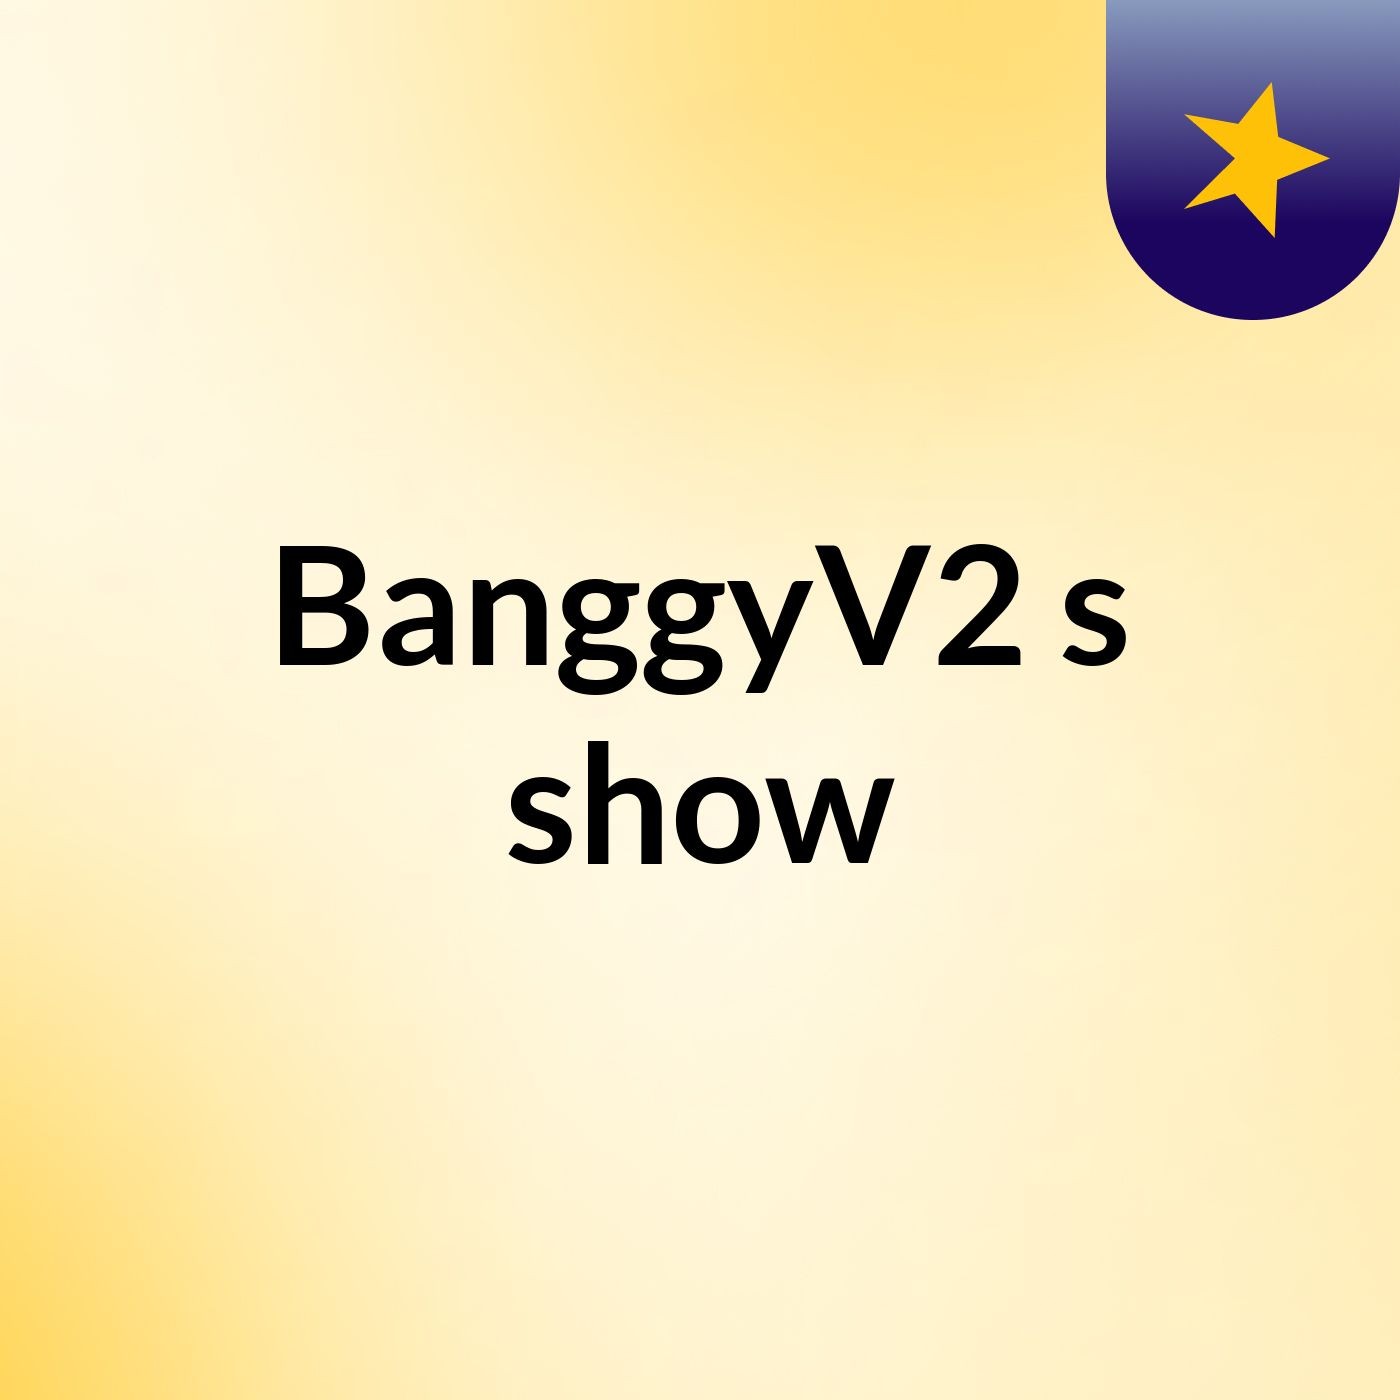 BanggyV2's show